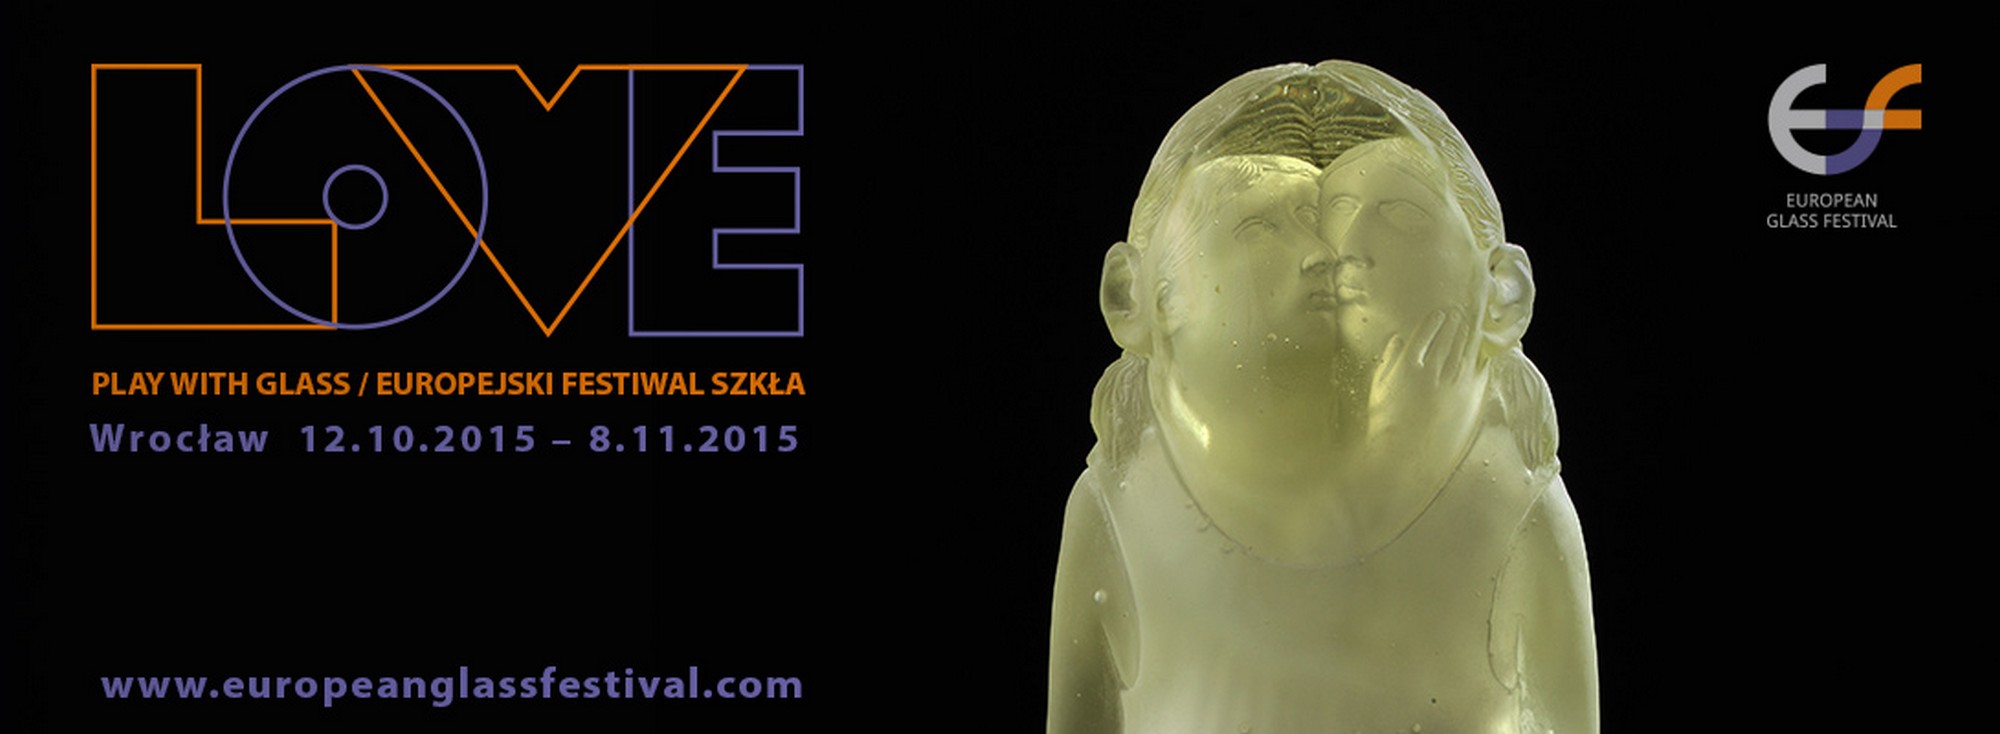 Europejski Festiwal Szkła 2015 (źródło: materiały prasowe organizatora)